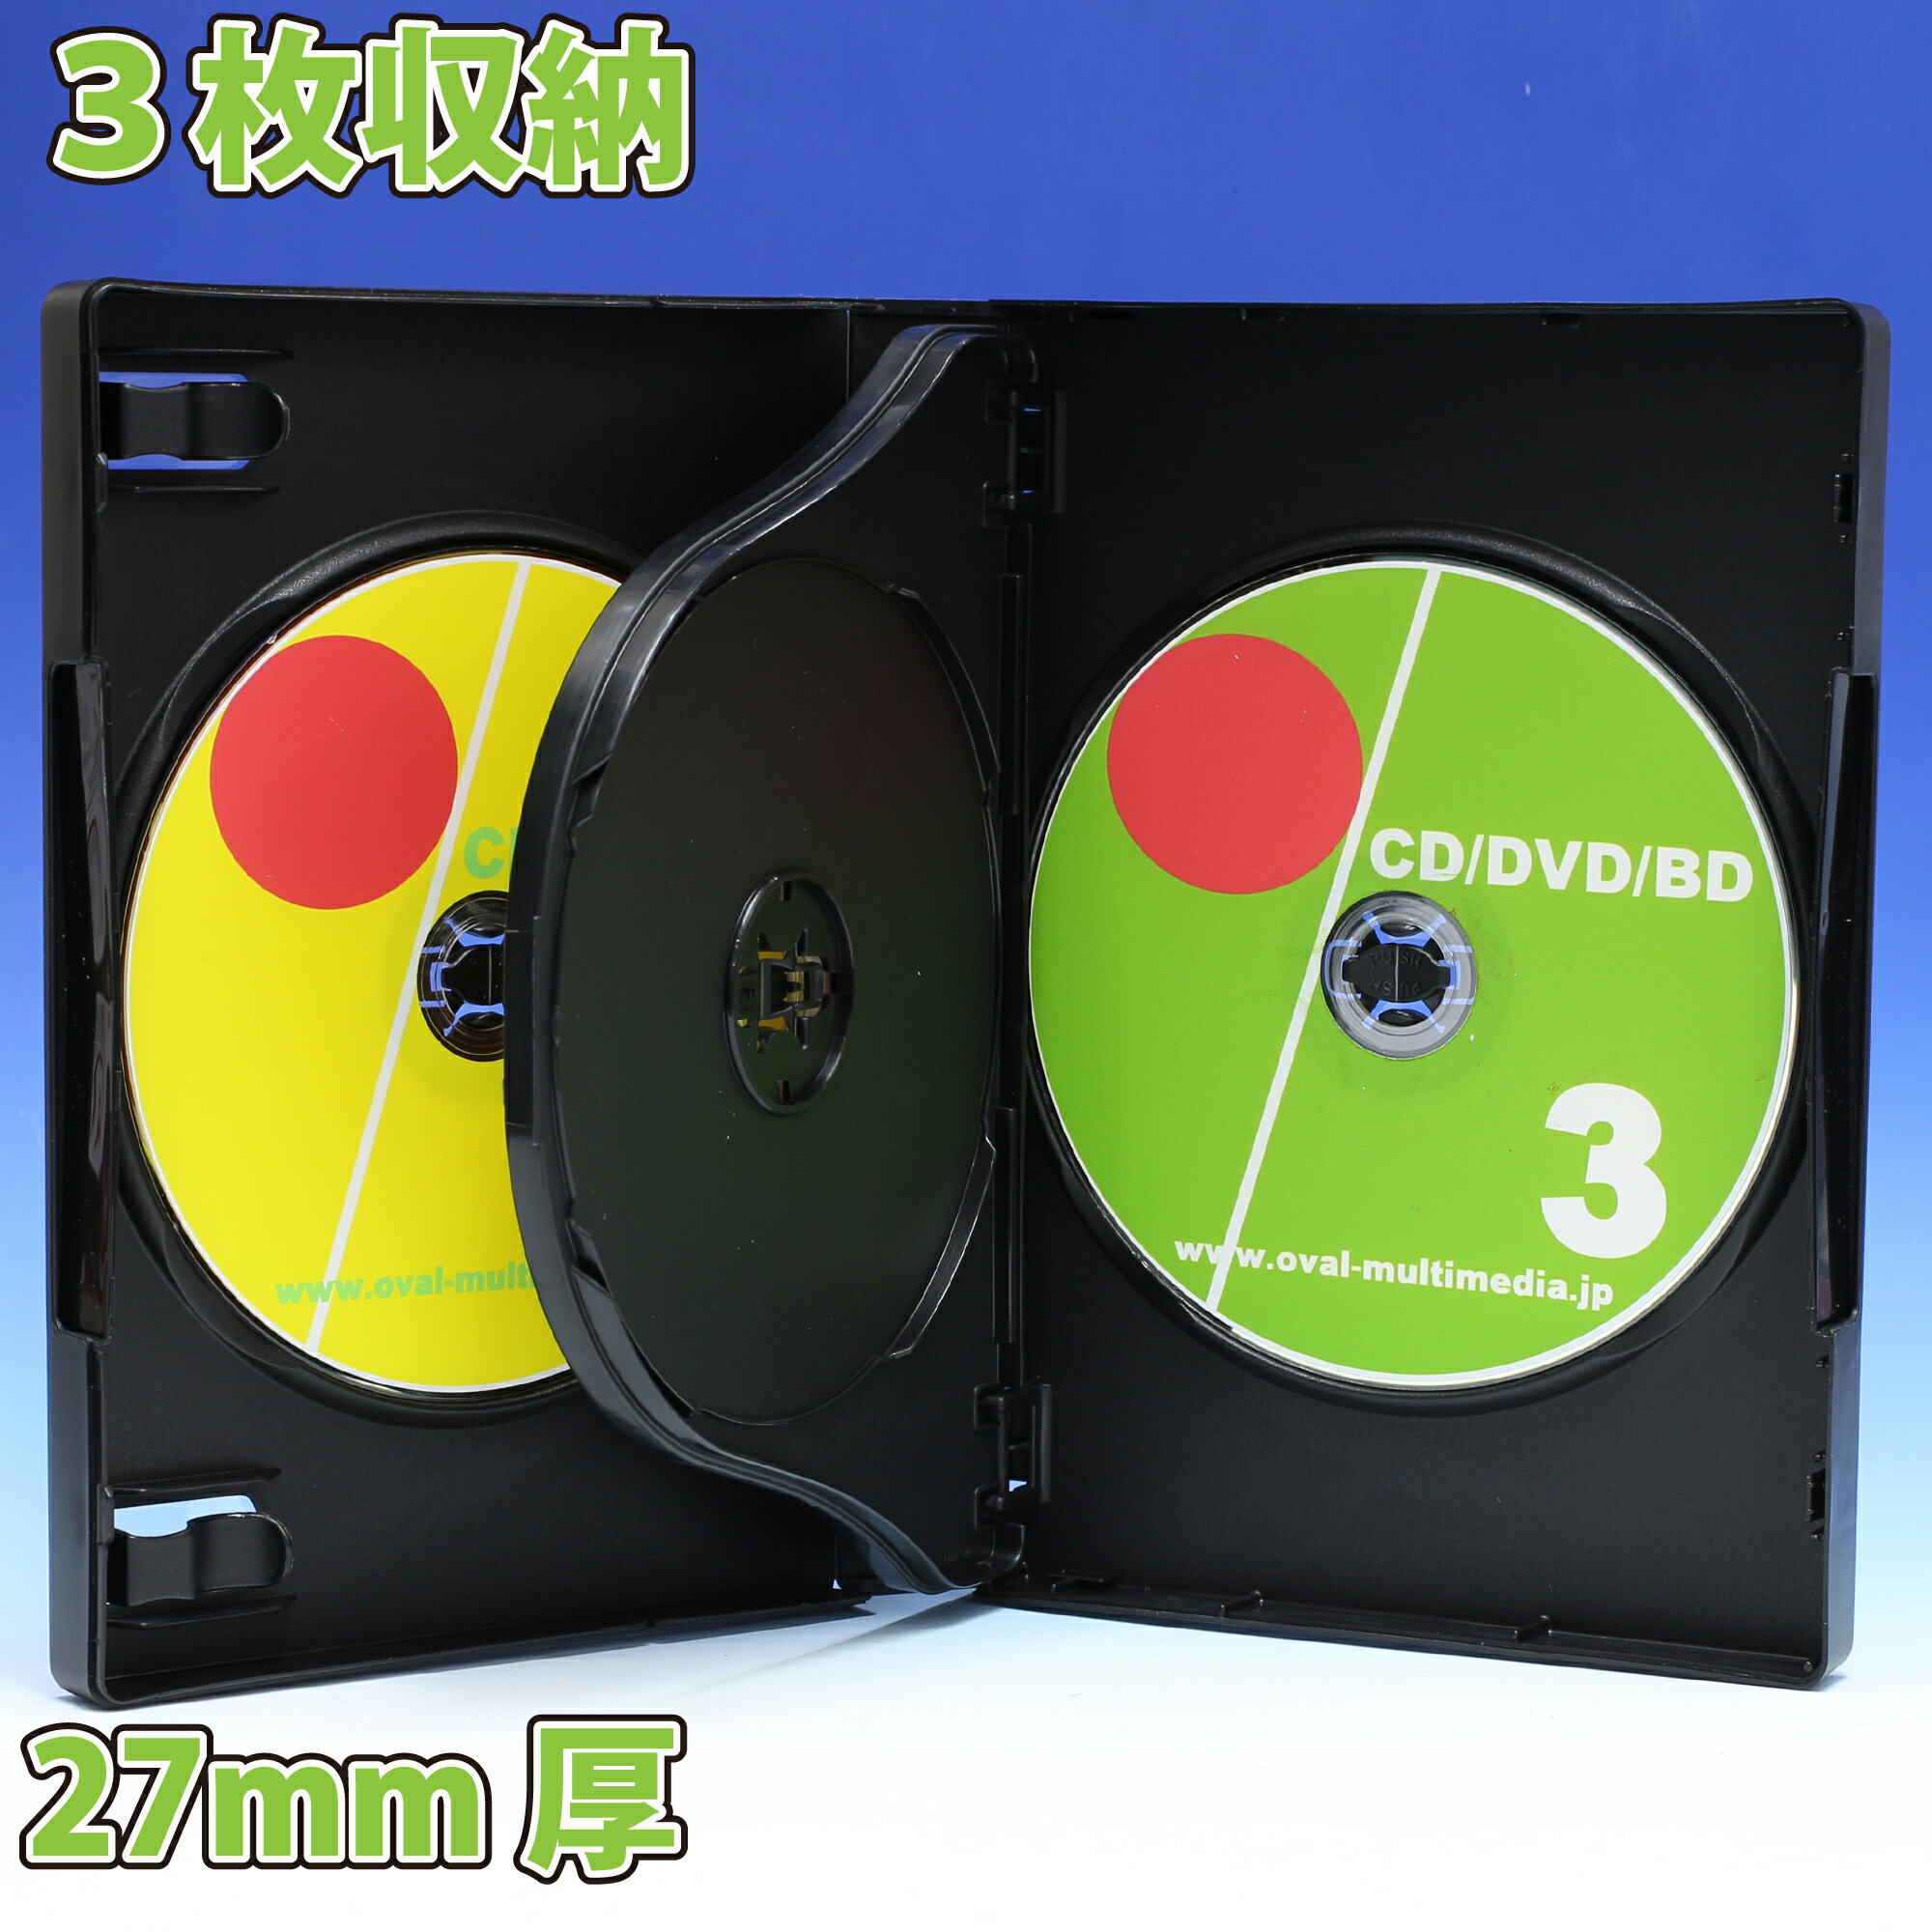 27mm厚 3枚収納 MロックDVDトールケース ブラック 1個 Blu-rayDisc収納可能